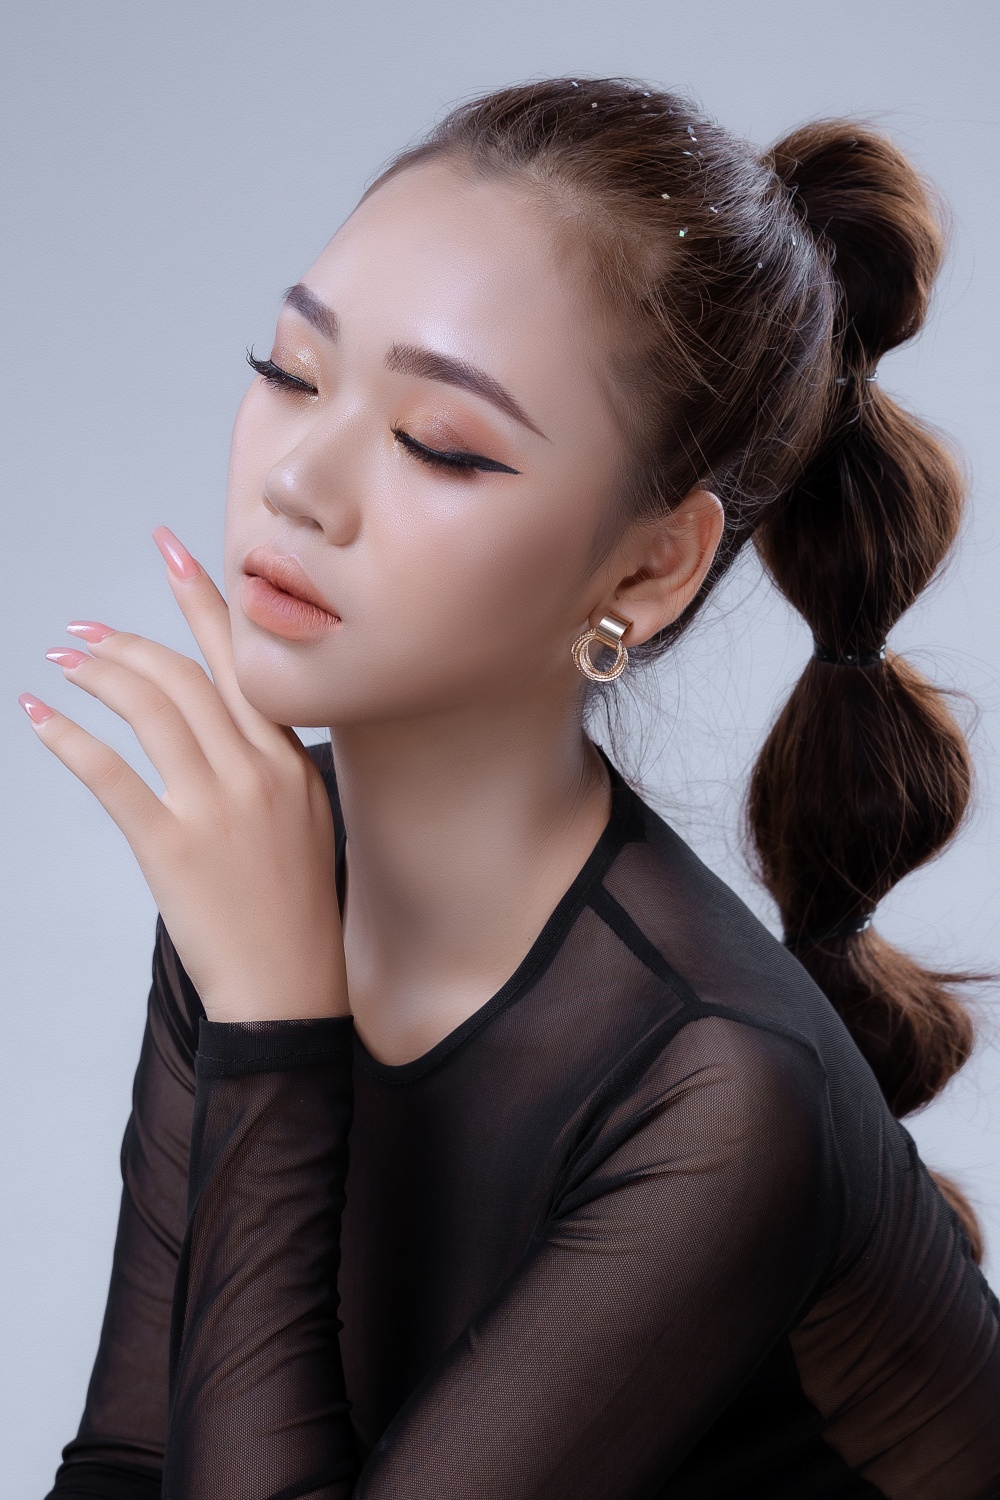 Nữ sinh 19 tuổi nói gì về việc đứng đầu bình chọn ở Hoa hậu Hoàn vũ Việt Nam - ảnh 2